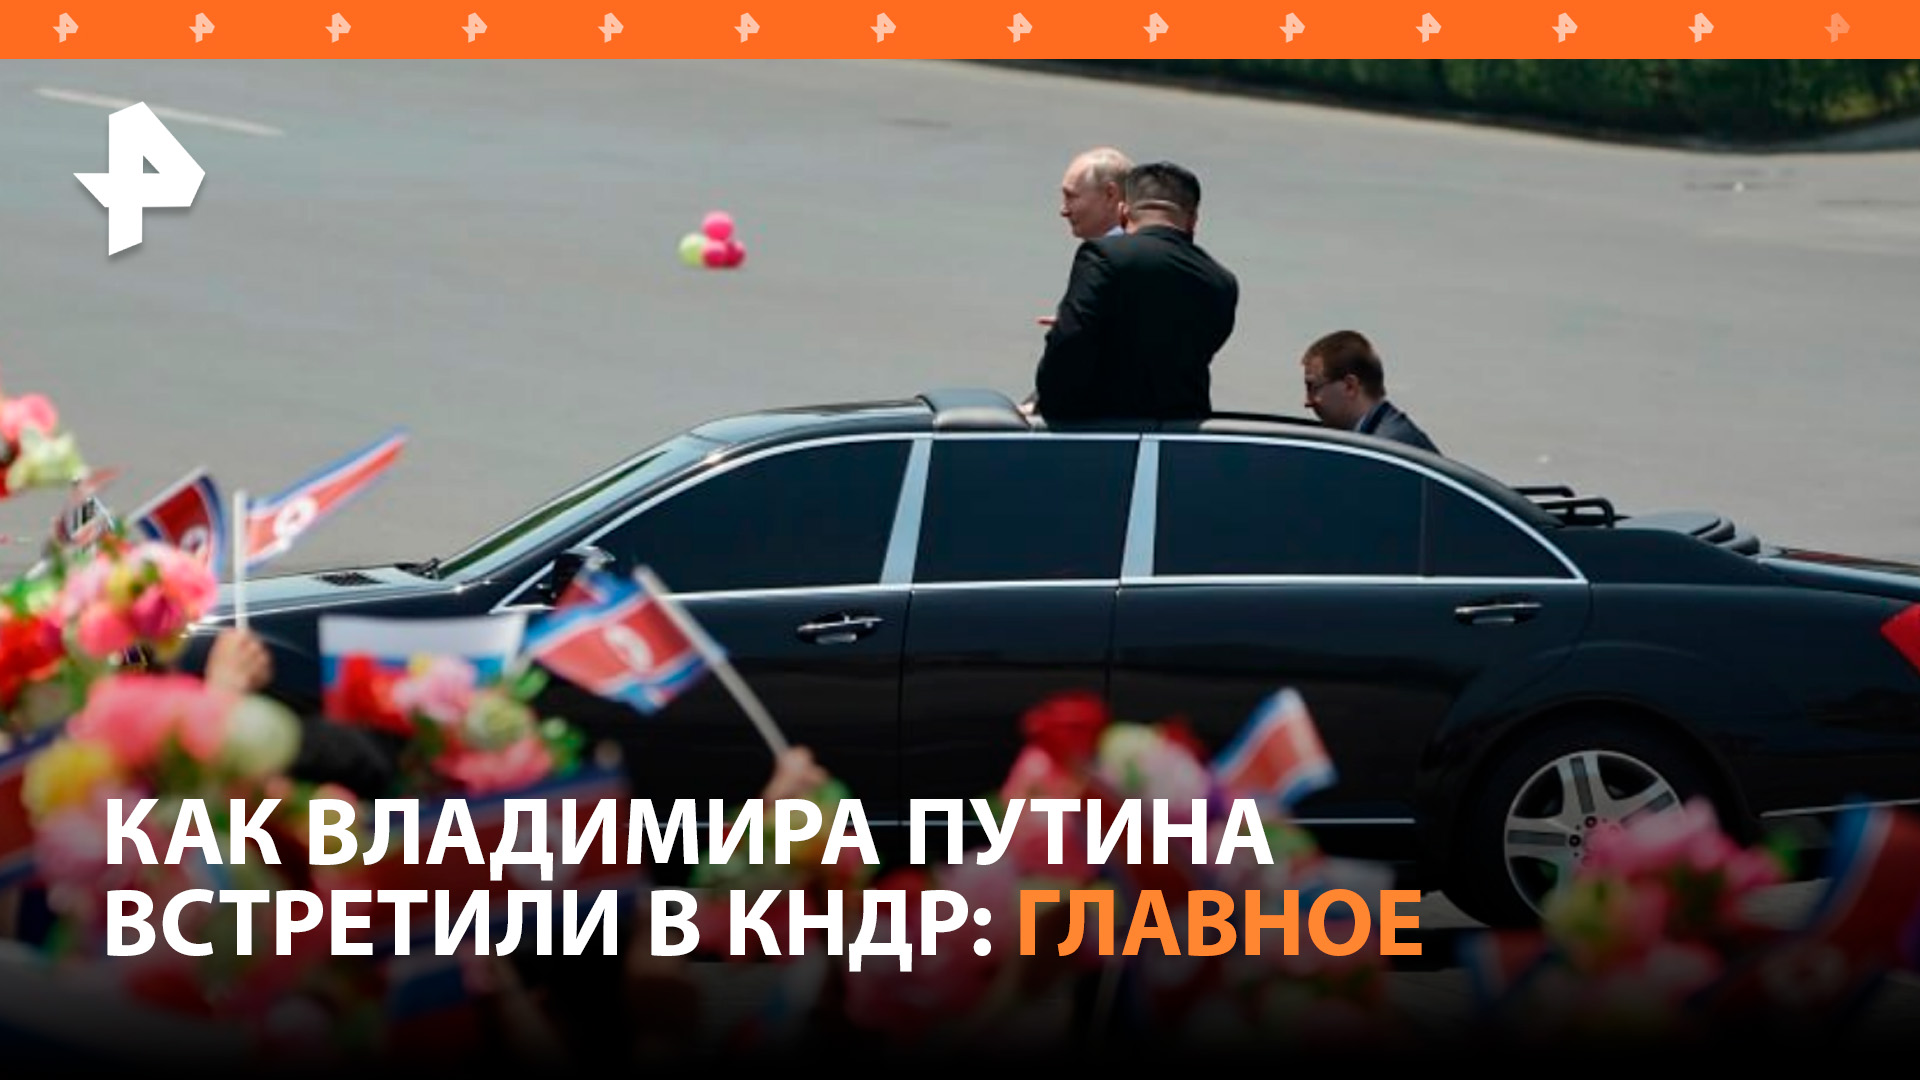 Масштабно и громко: как Владимира Путина встречали в Пхеньяне / РЕН Новости